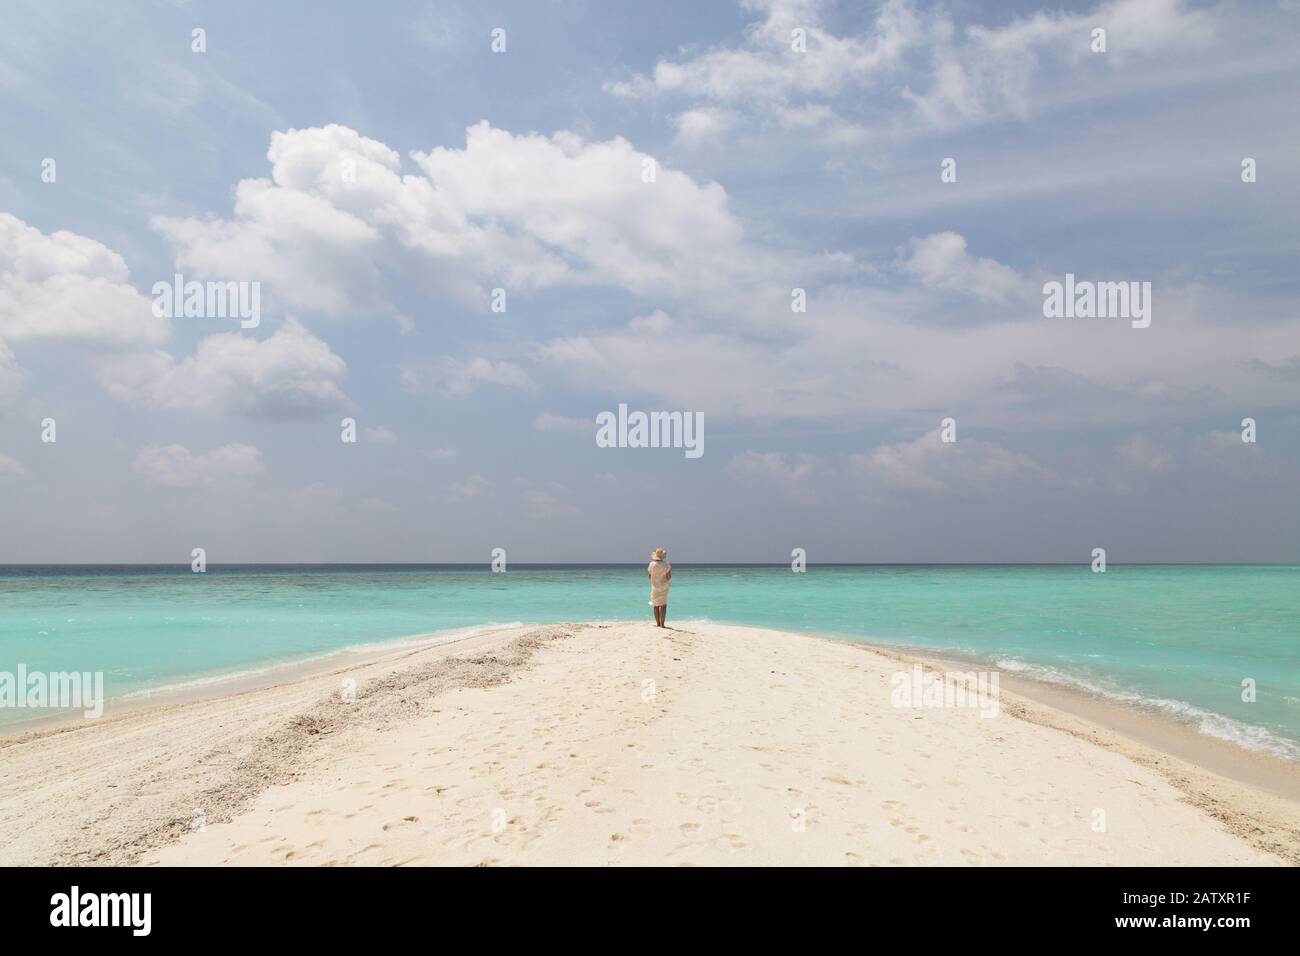 Konzept Reisen - Frau am Strand; EINE alleinstehende Frau, die an einem tropischen Strand mit weißem Sand, blauem Himmel und türkisfarbenem Wasser steht, Rückansicht, die Malediven, Asien Stockfoto